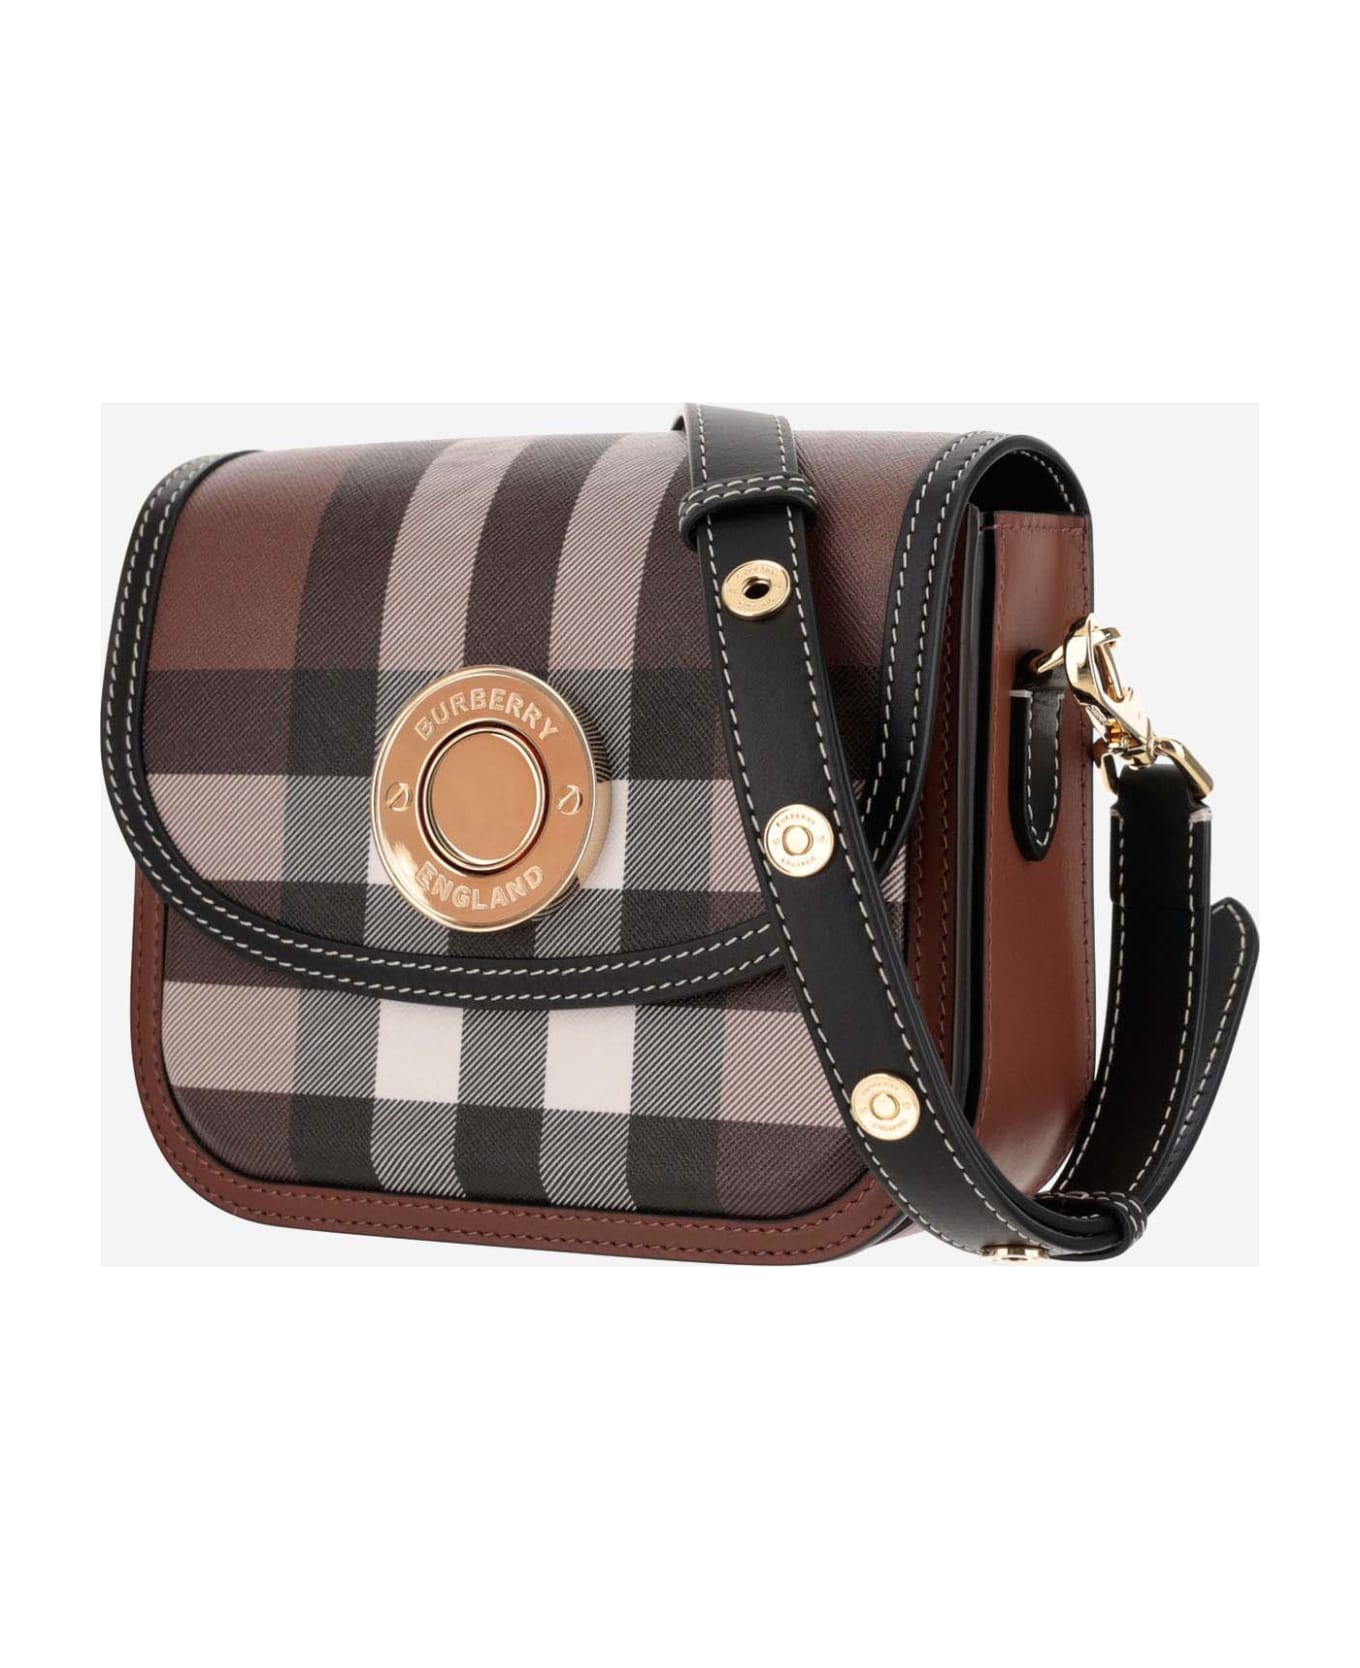 Burberry Elizabeth Check Pattern Shoulder Bag - Brown